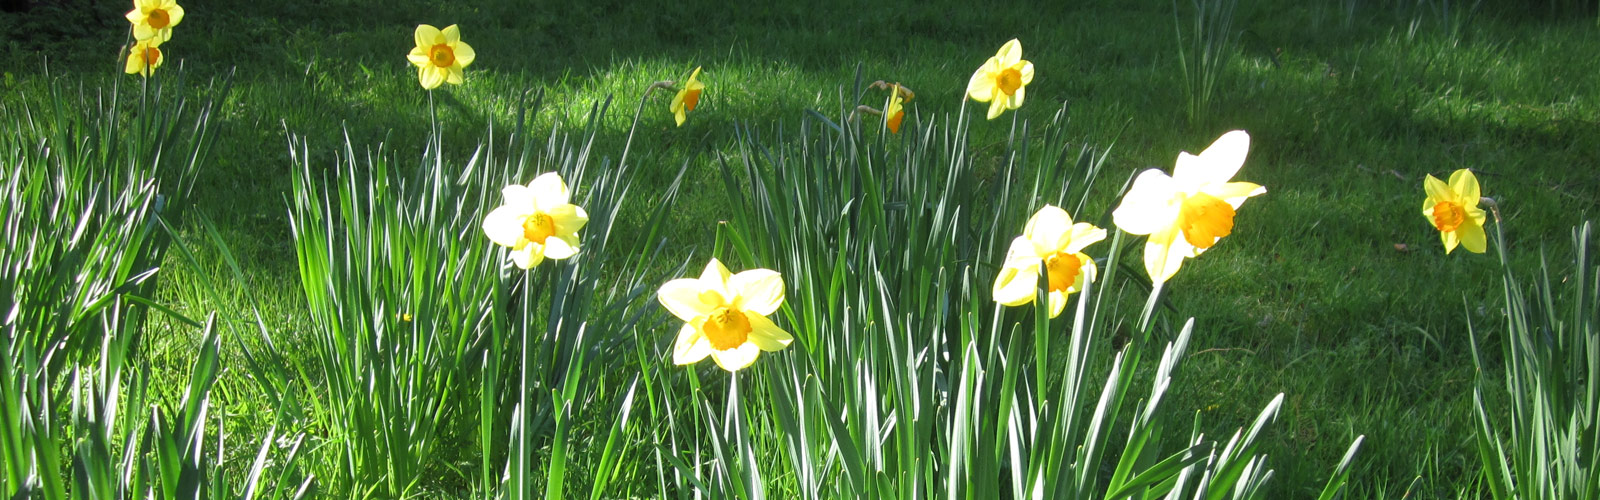 Daffodils in sun